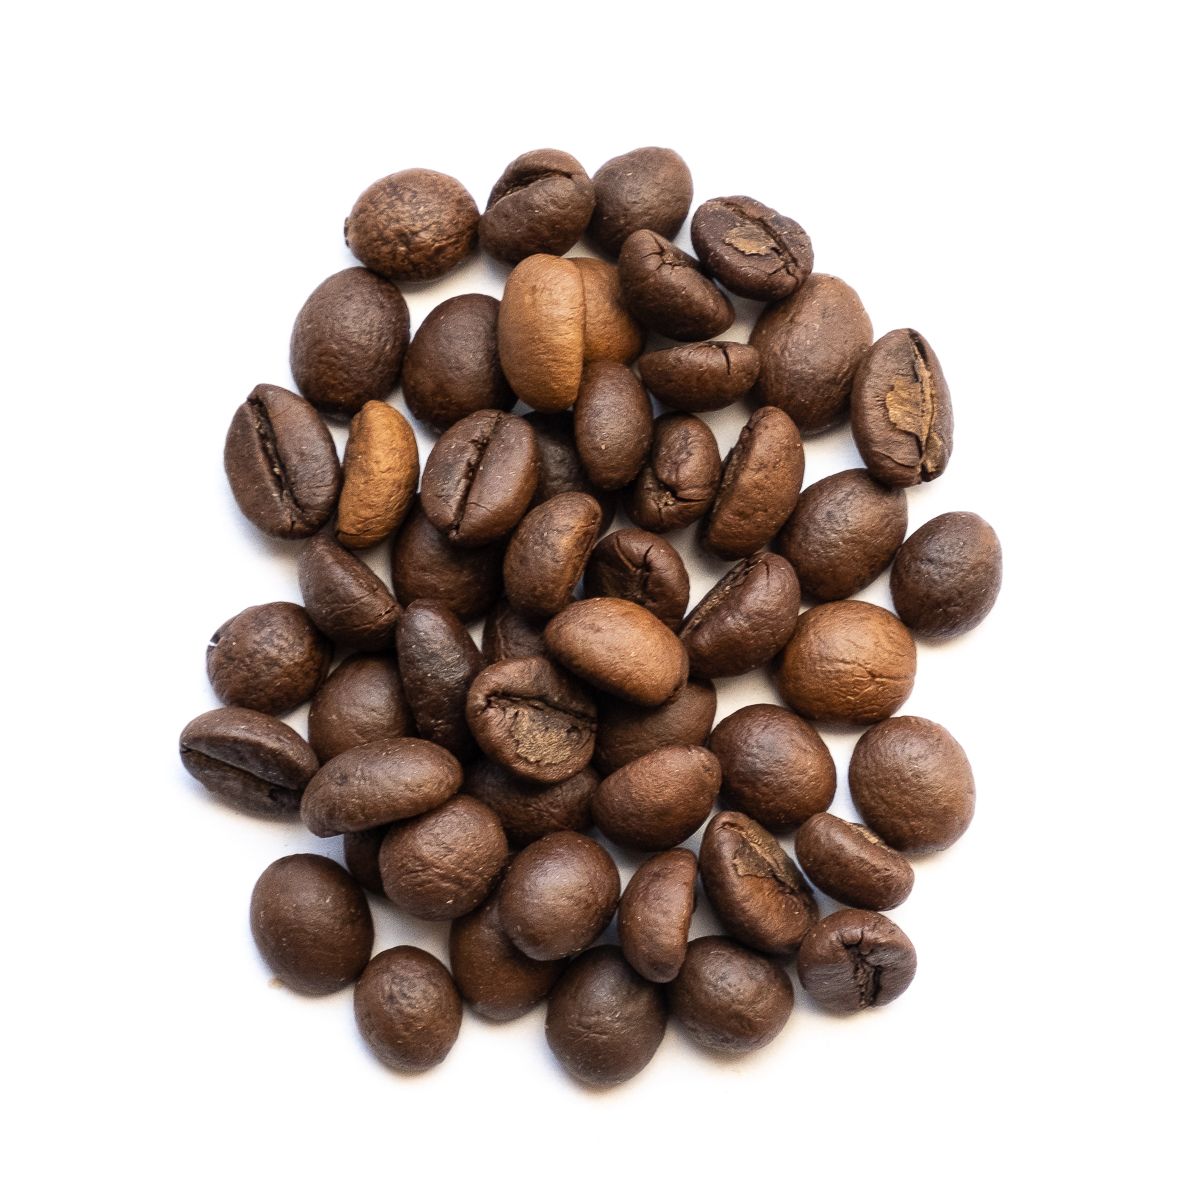 Etiopie Djmimah Gr. 5, unwashed 100% arabika 500g - KK000801-02 Orientcaffé káva